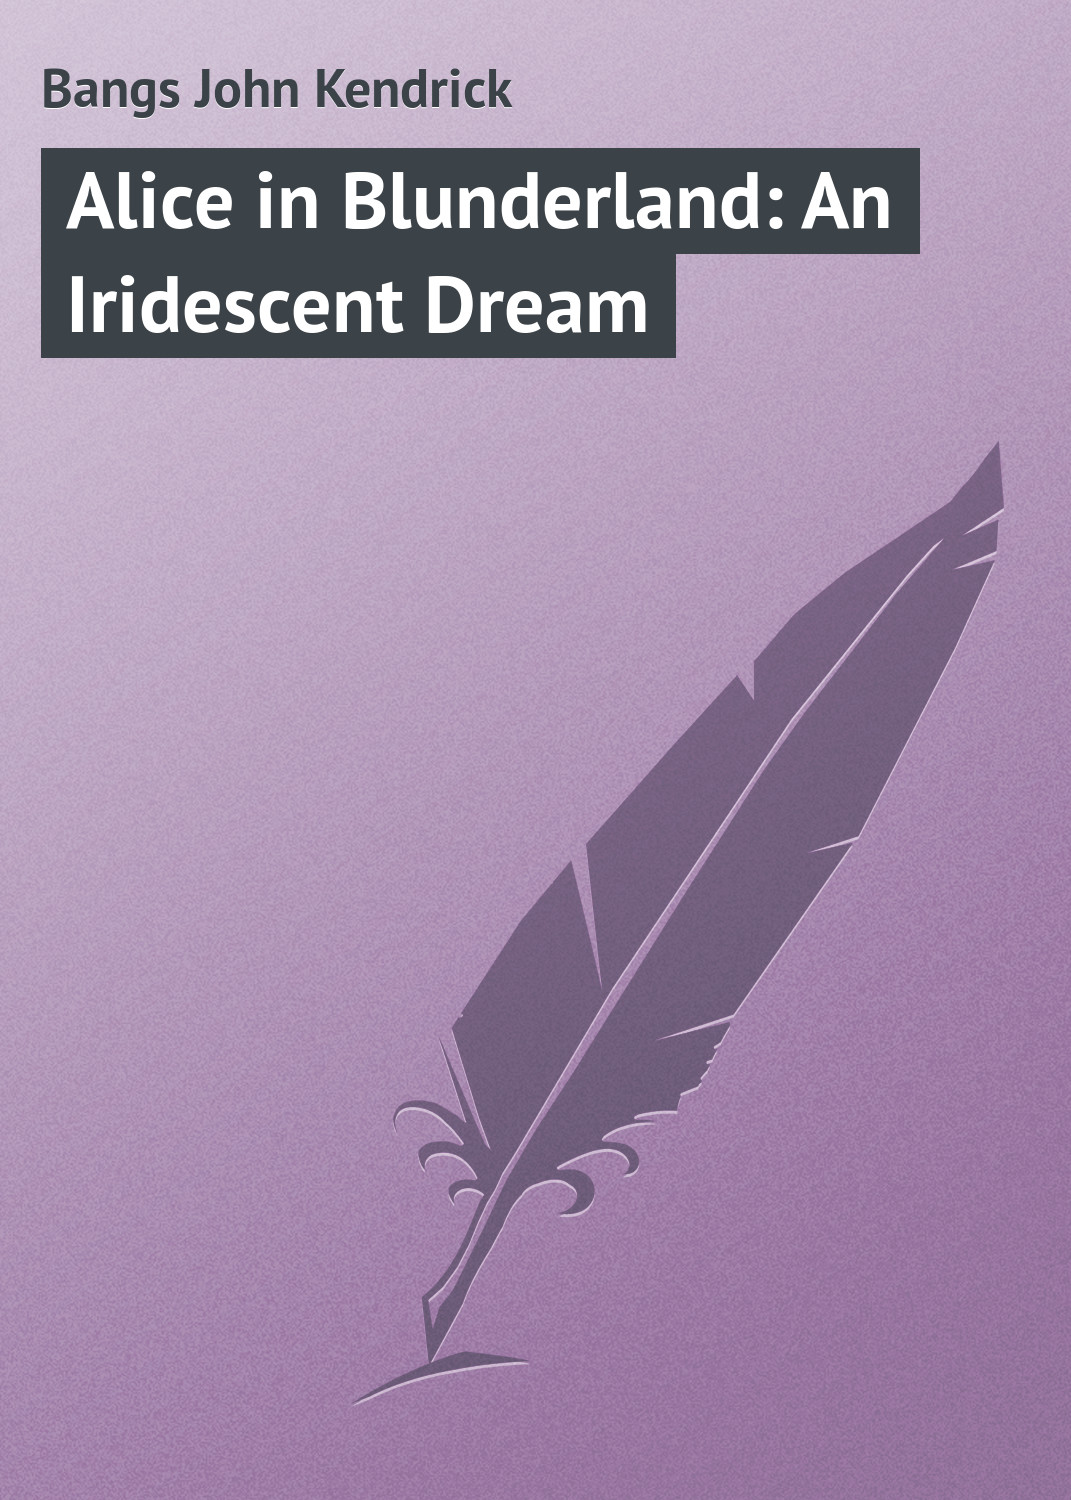 Книга Alice in Blunderland: An Iridescent Dream из серии , созданная John Bangs, может относится к жанру Зарубежная классика. Стоимость электронной книги Alice in Blunderland: An Iridescent Dream с идентификатором 23145067 составляет 5.99 руб.